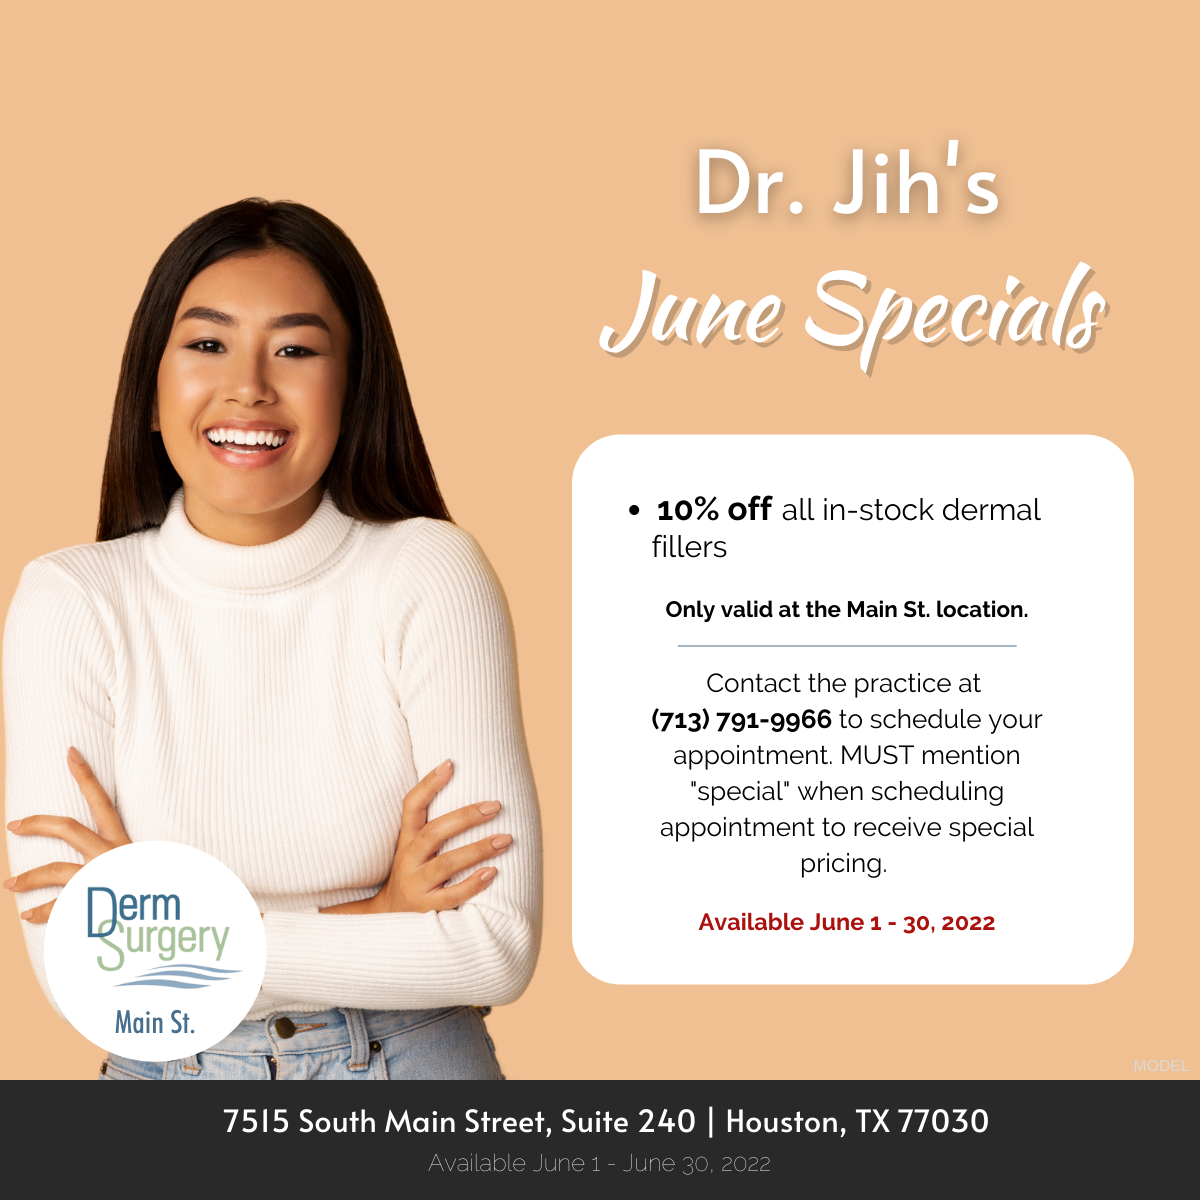 Dr. Jih's June Specials 2022